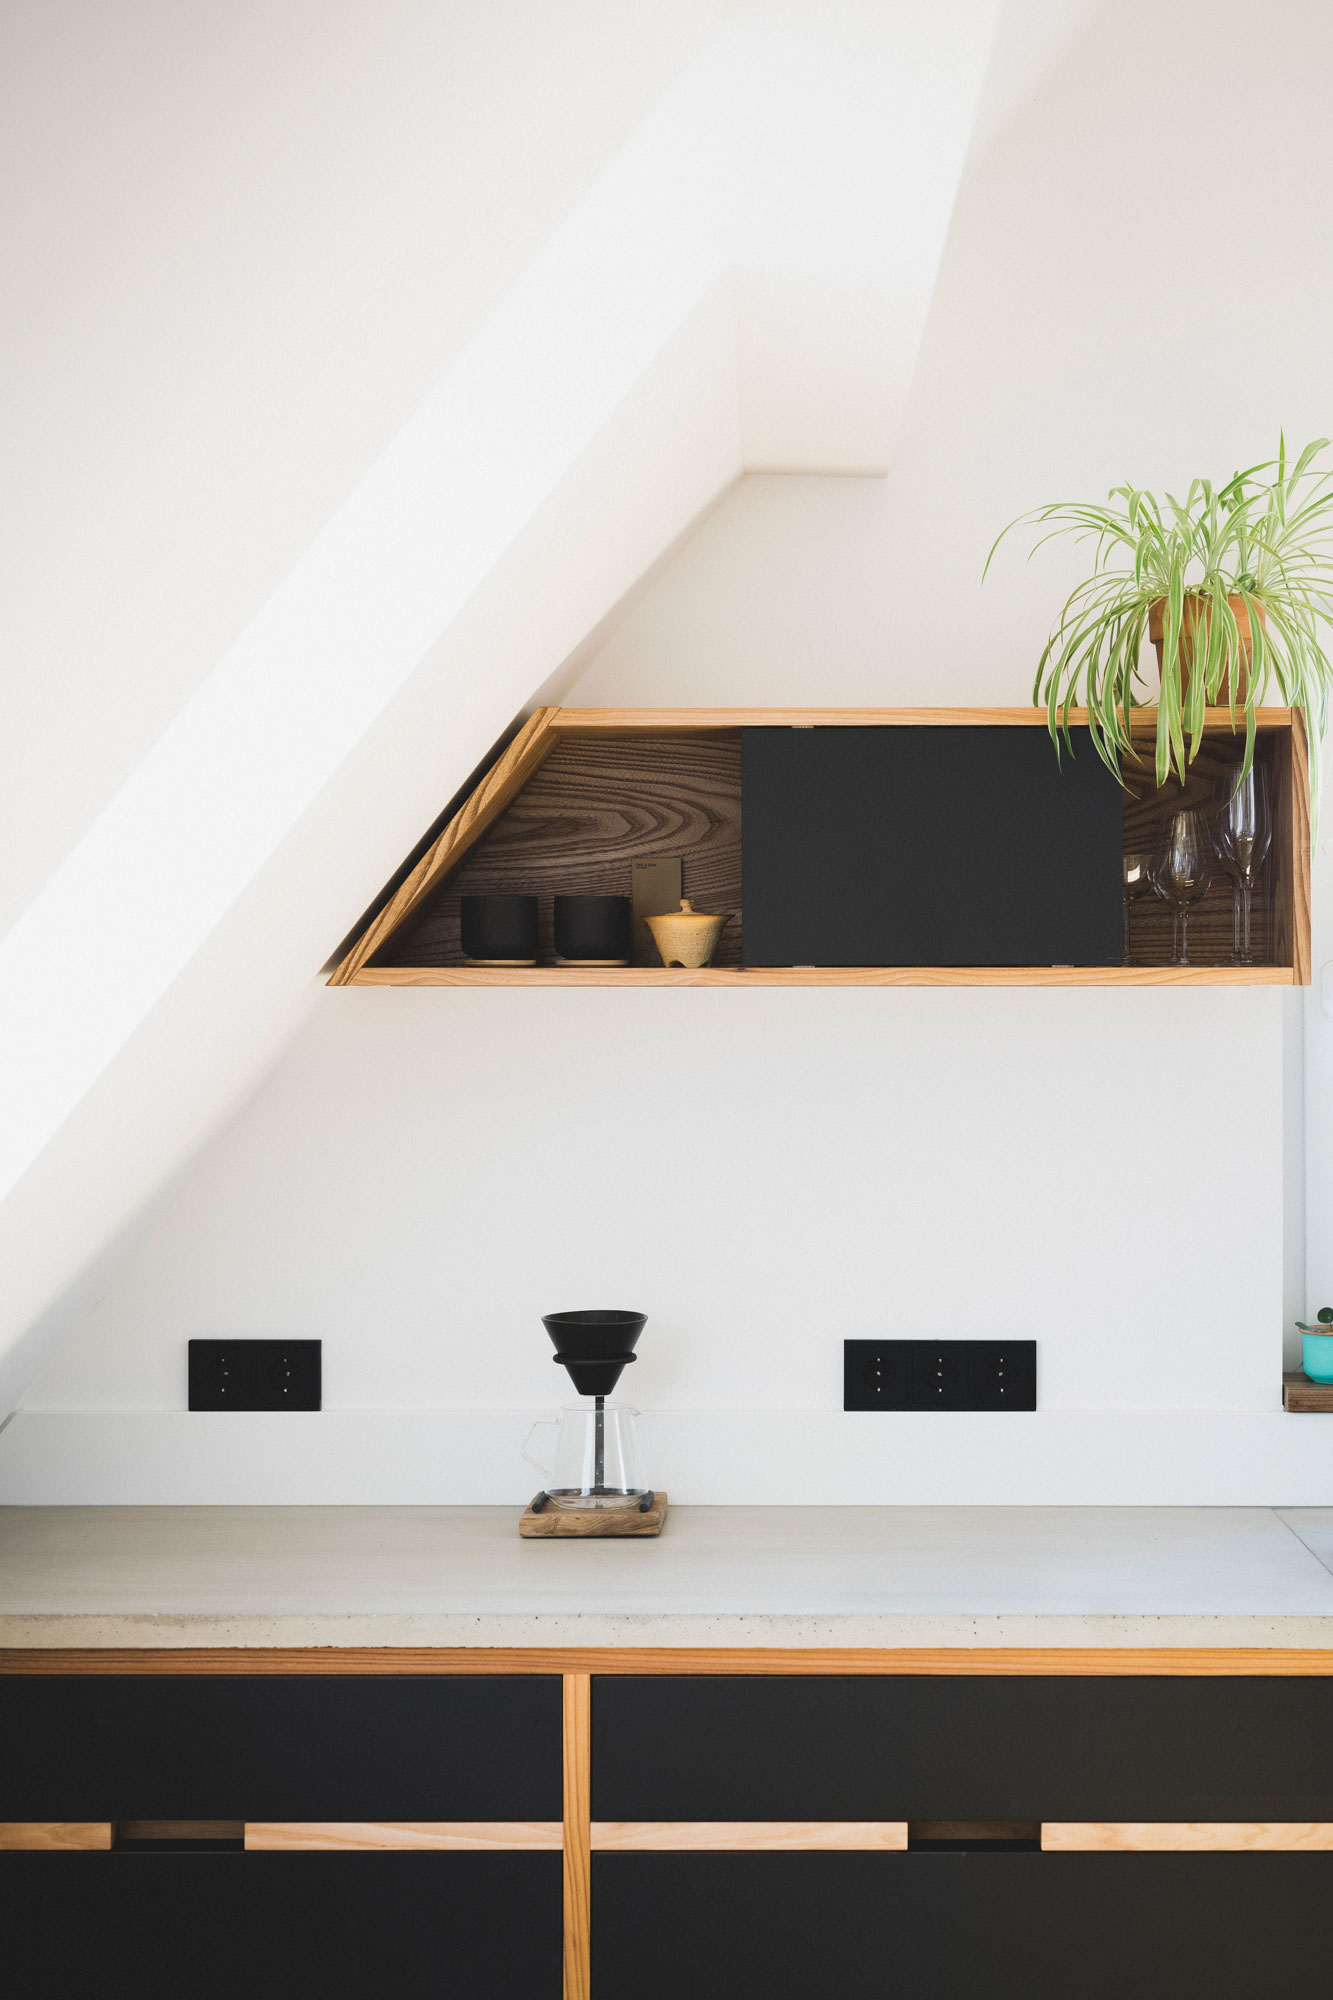 Holzregale mit schwarzer Umrandung mit Designgläsern und Dekoelementen in einer Wohnung in Nürnberg.